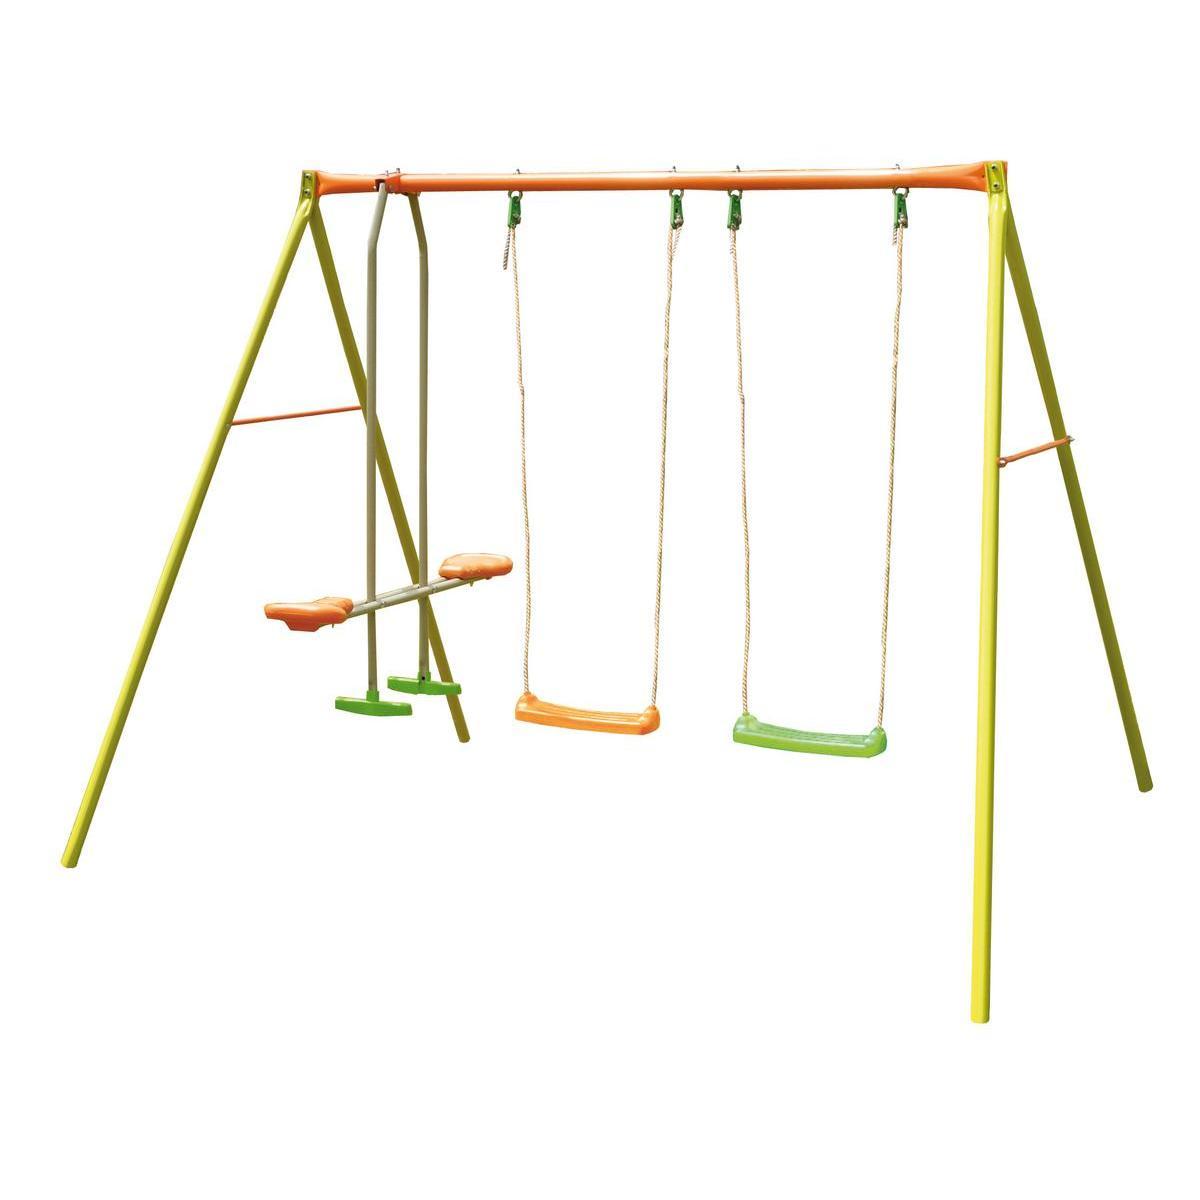 Portique pour balançoires - Acier - 259 x 185 x 190 cm - Vert, jaune et orange